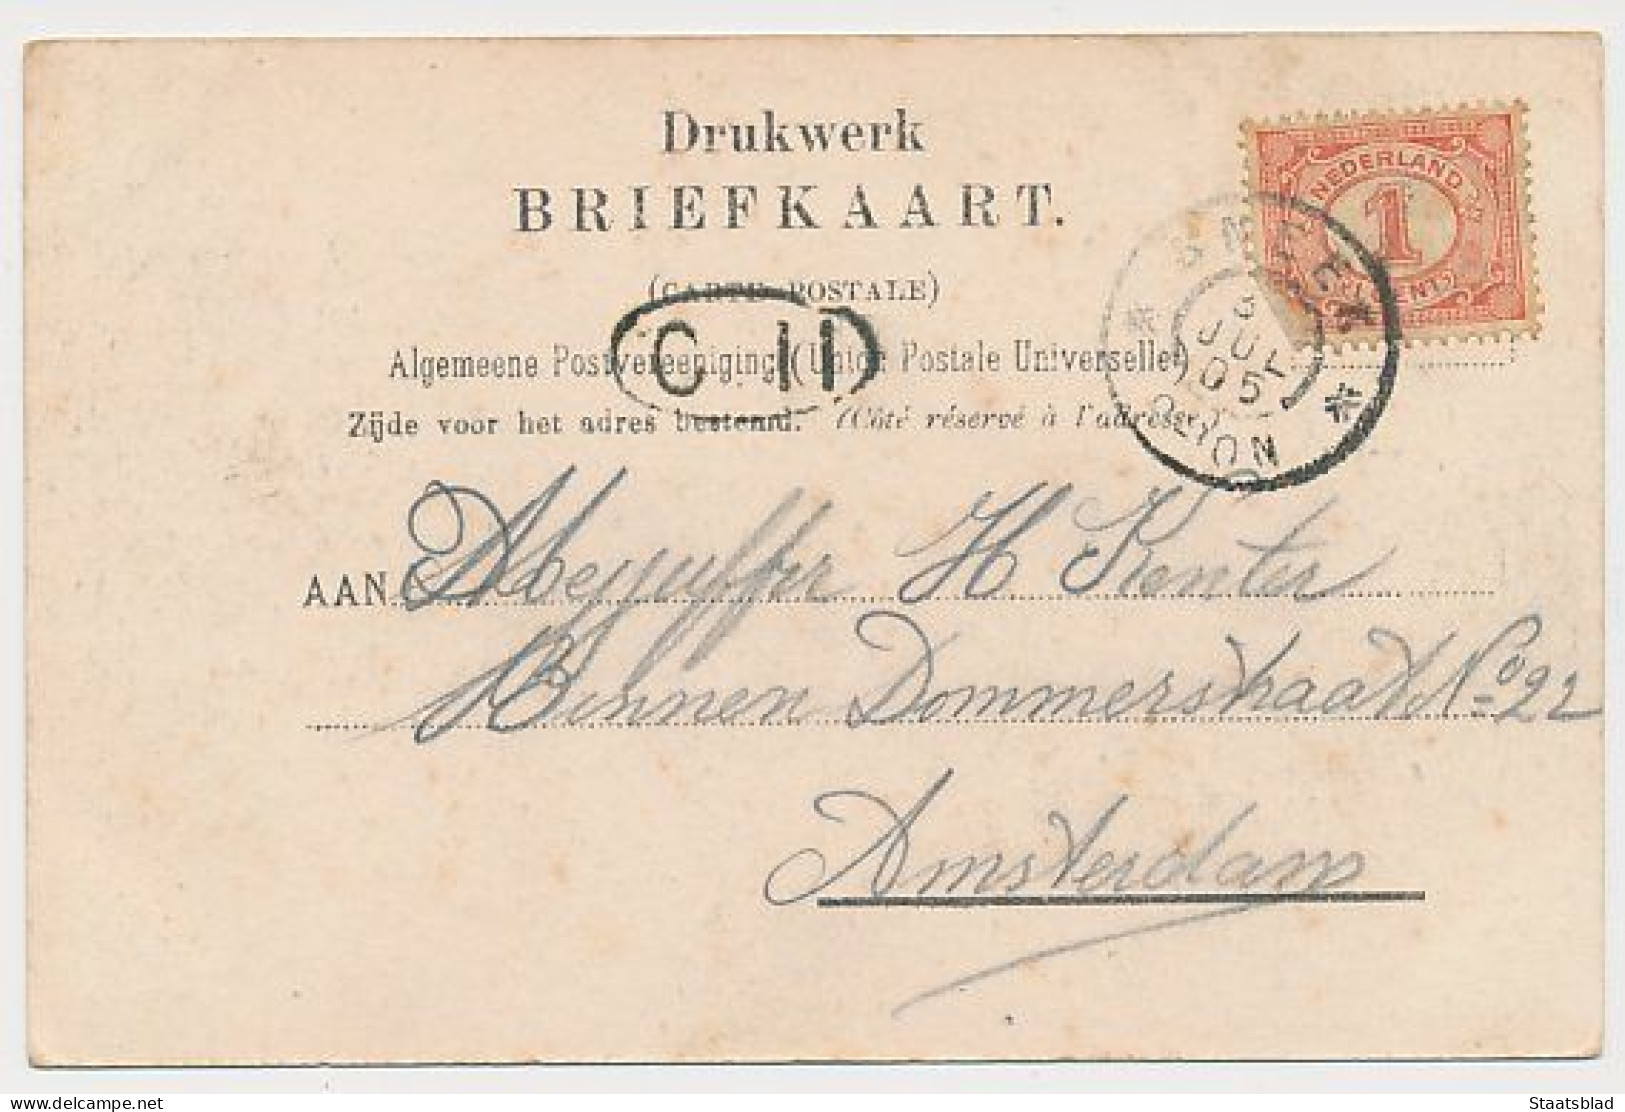 13- Prentbriefkaart Sneek 1905 - Verlengde Westersingel - Sneek